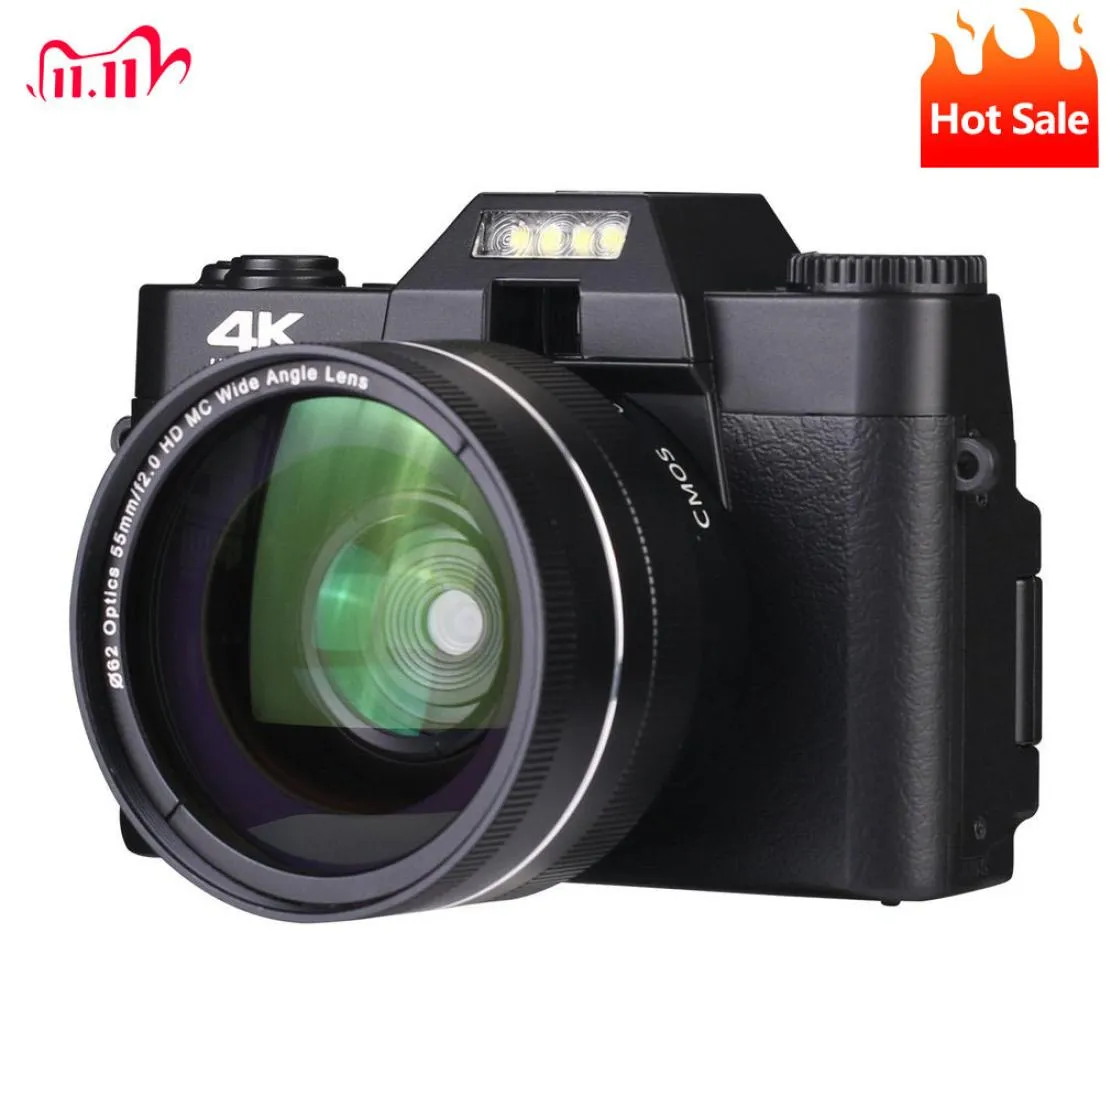 Fotocamere digitali 4K HD HalfDSLR professionale con obiettivo grandangolare 16X Macro WiFi Timelapse 2211017880887